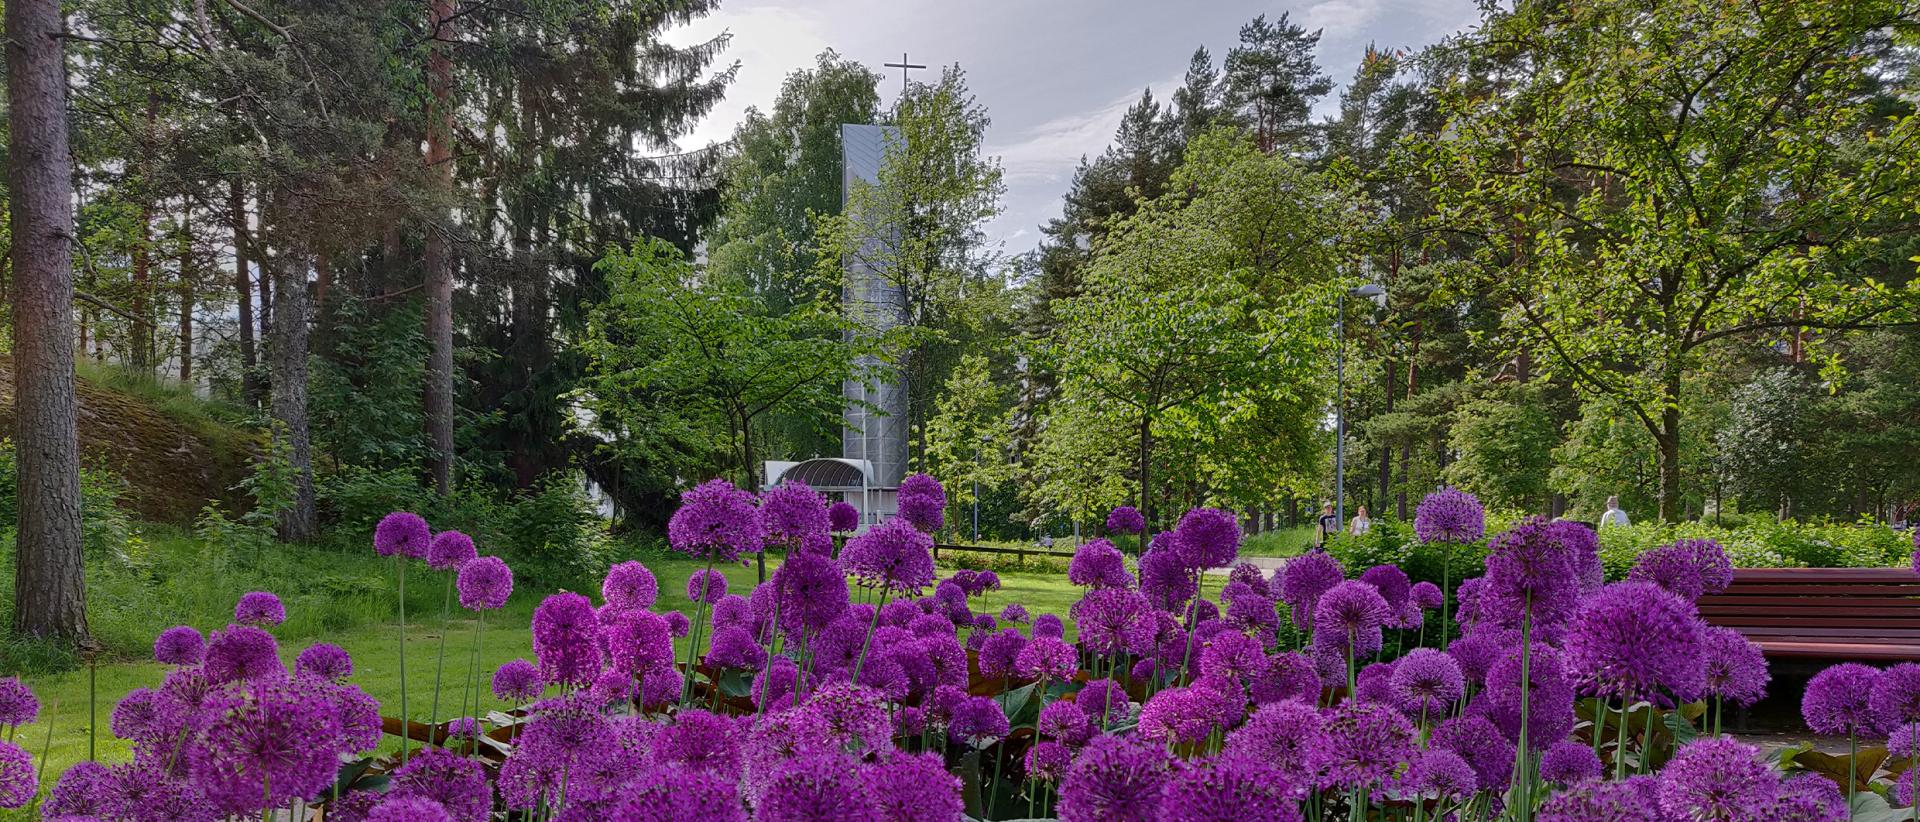 Myllypuron kirkko kuvattuna kesällä etualalla olevien violettien kukkien takaa.